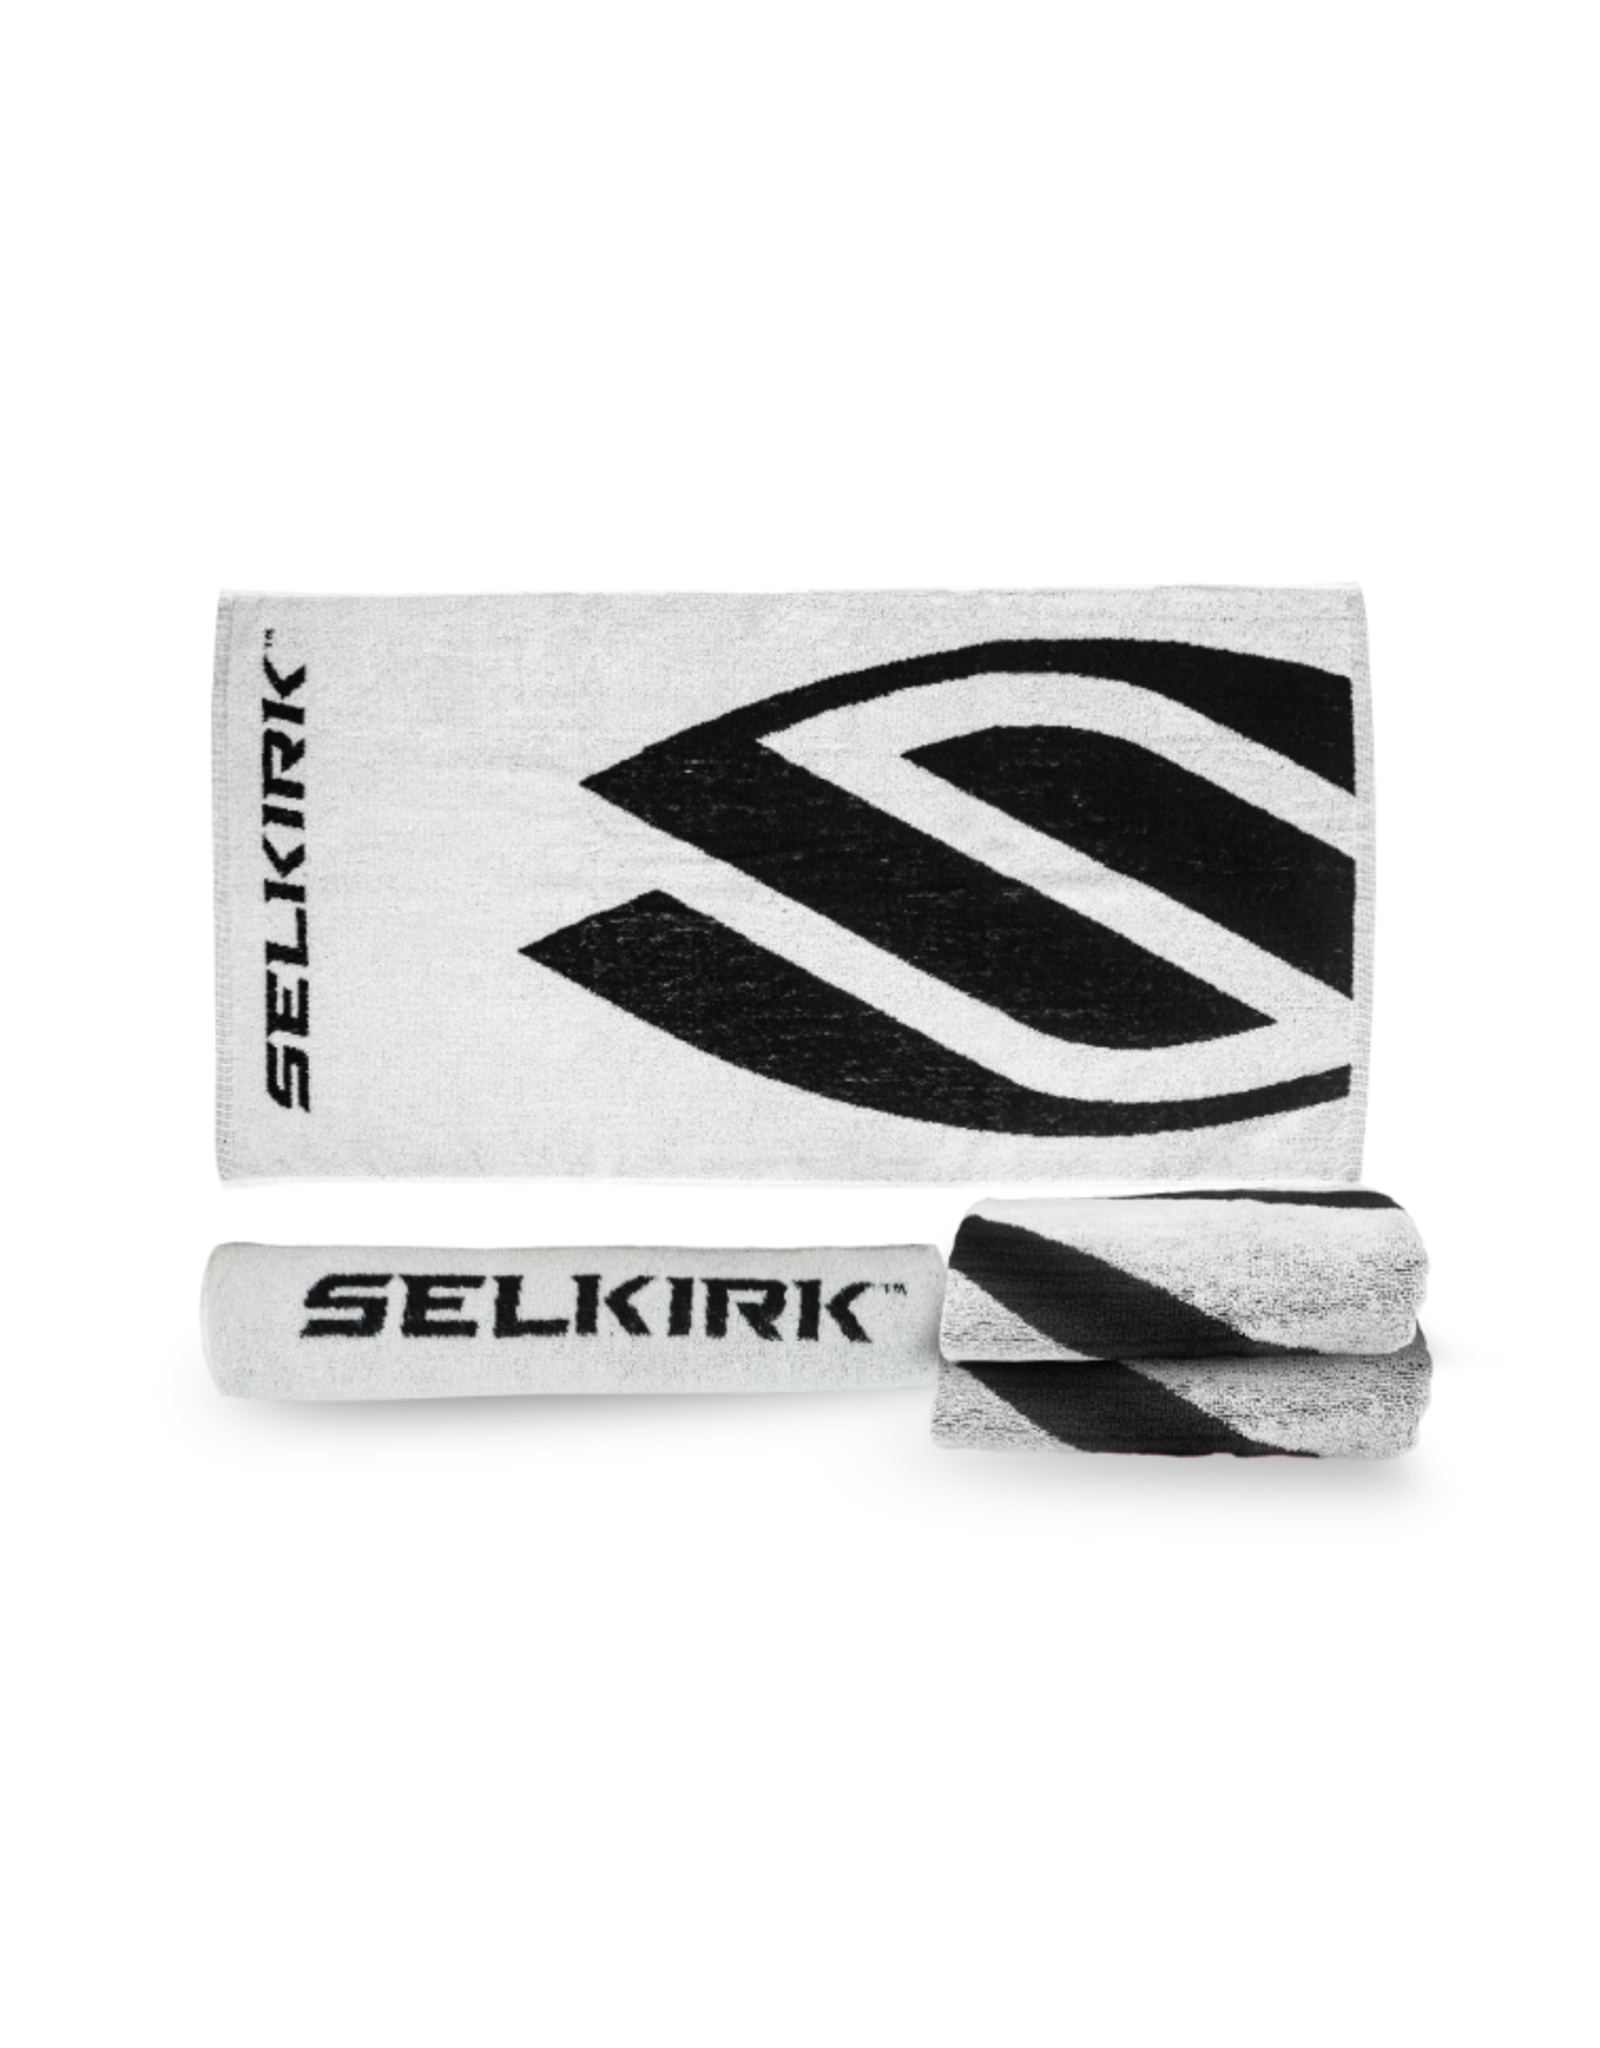 Selkirk Selkirk Cotton Towel - 19" x 36"